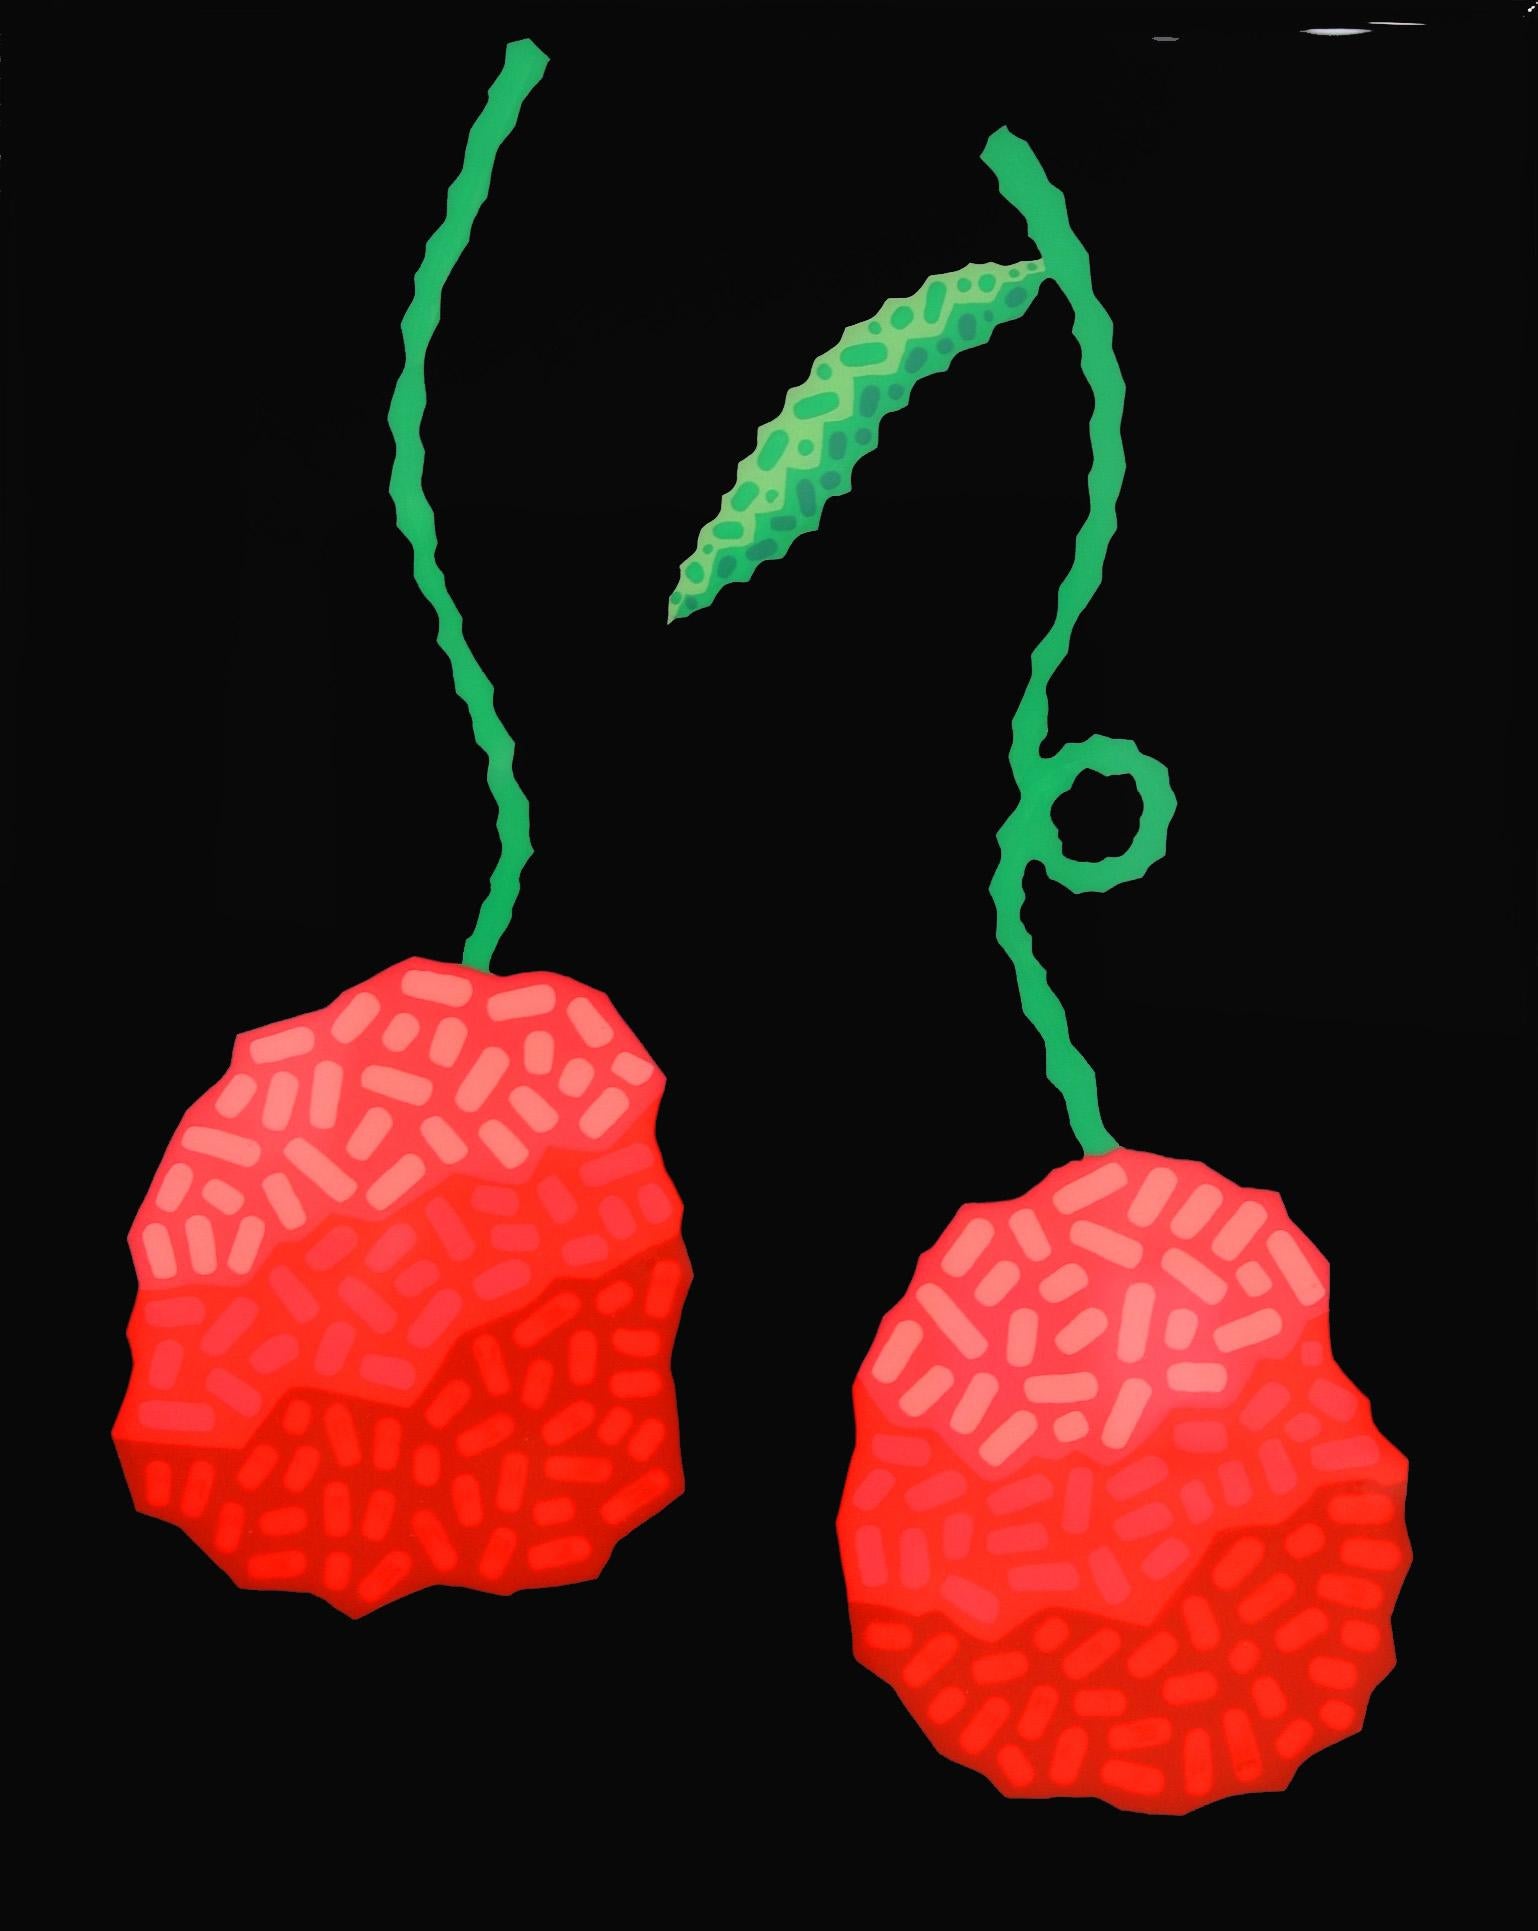 Peinture Pop Art sur les cerises noires - Fruits rouges vibrants d'inspiration sud-ouest